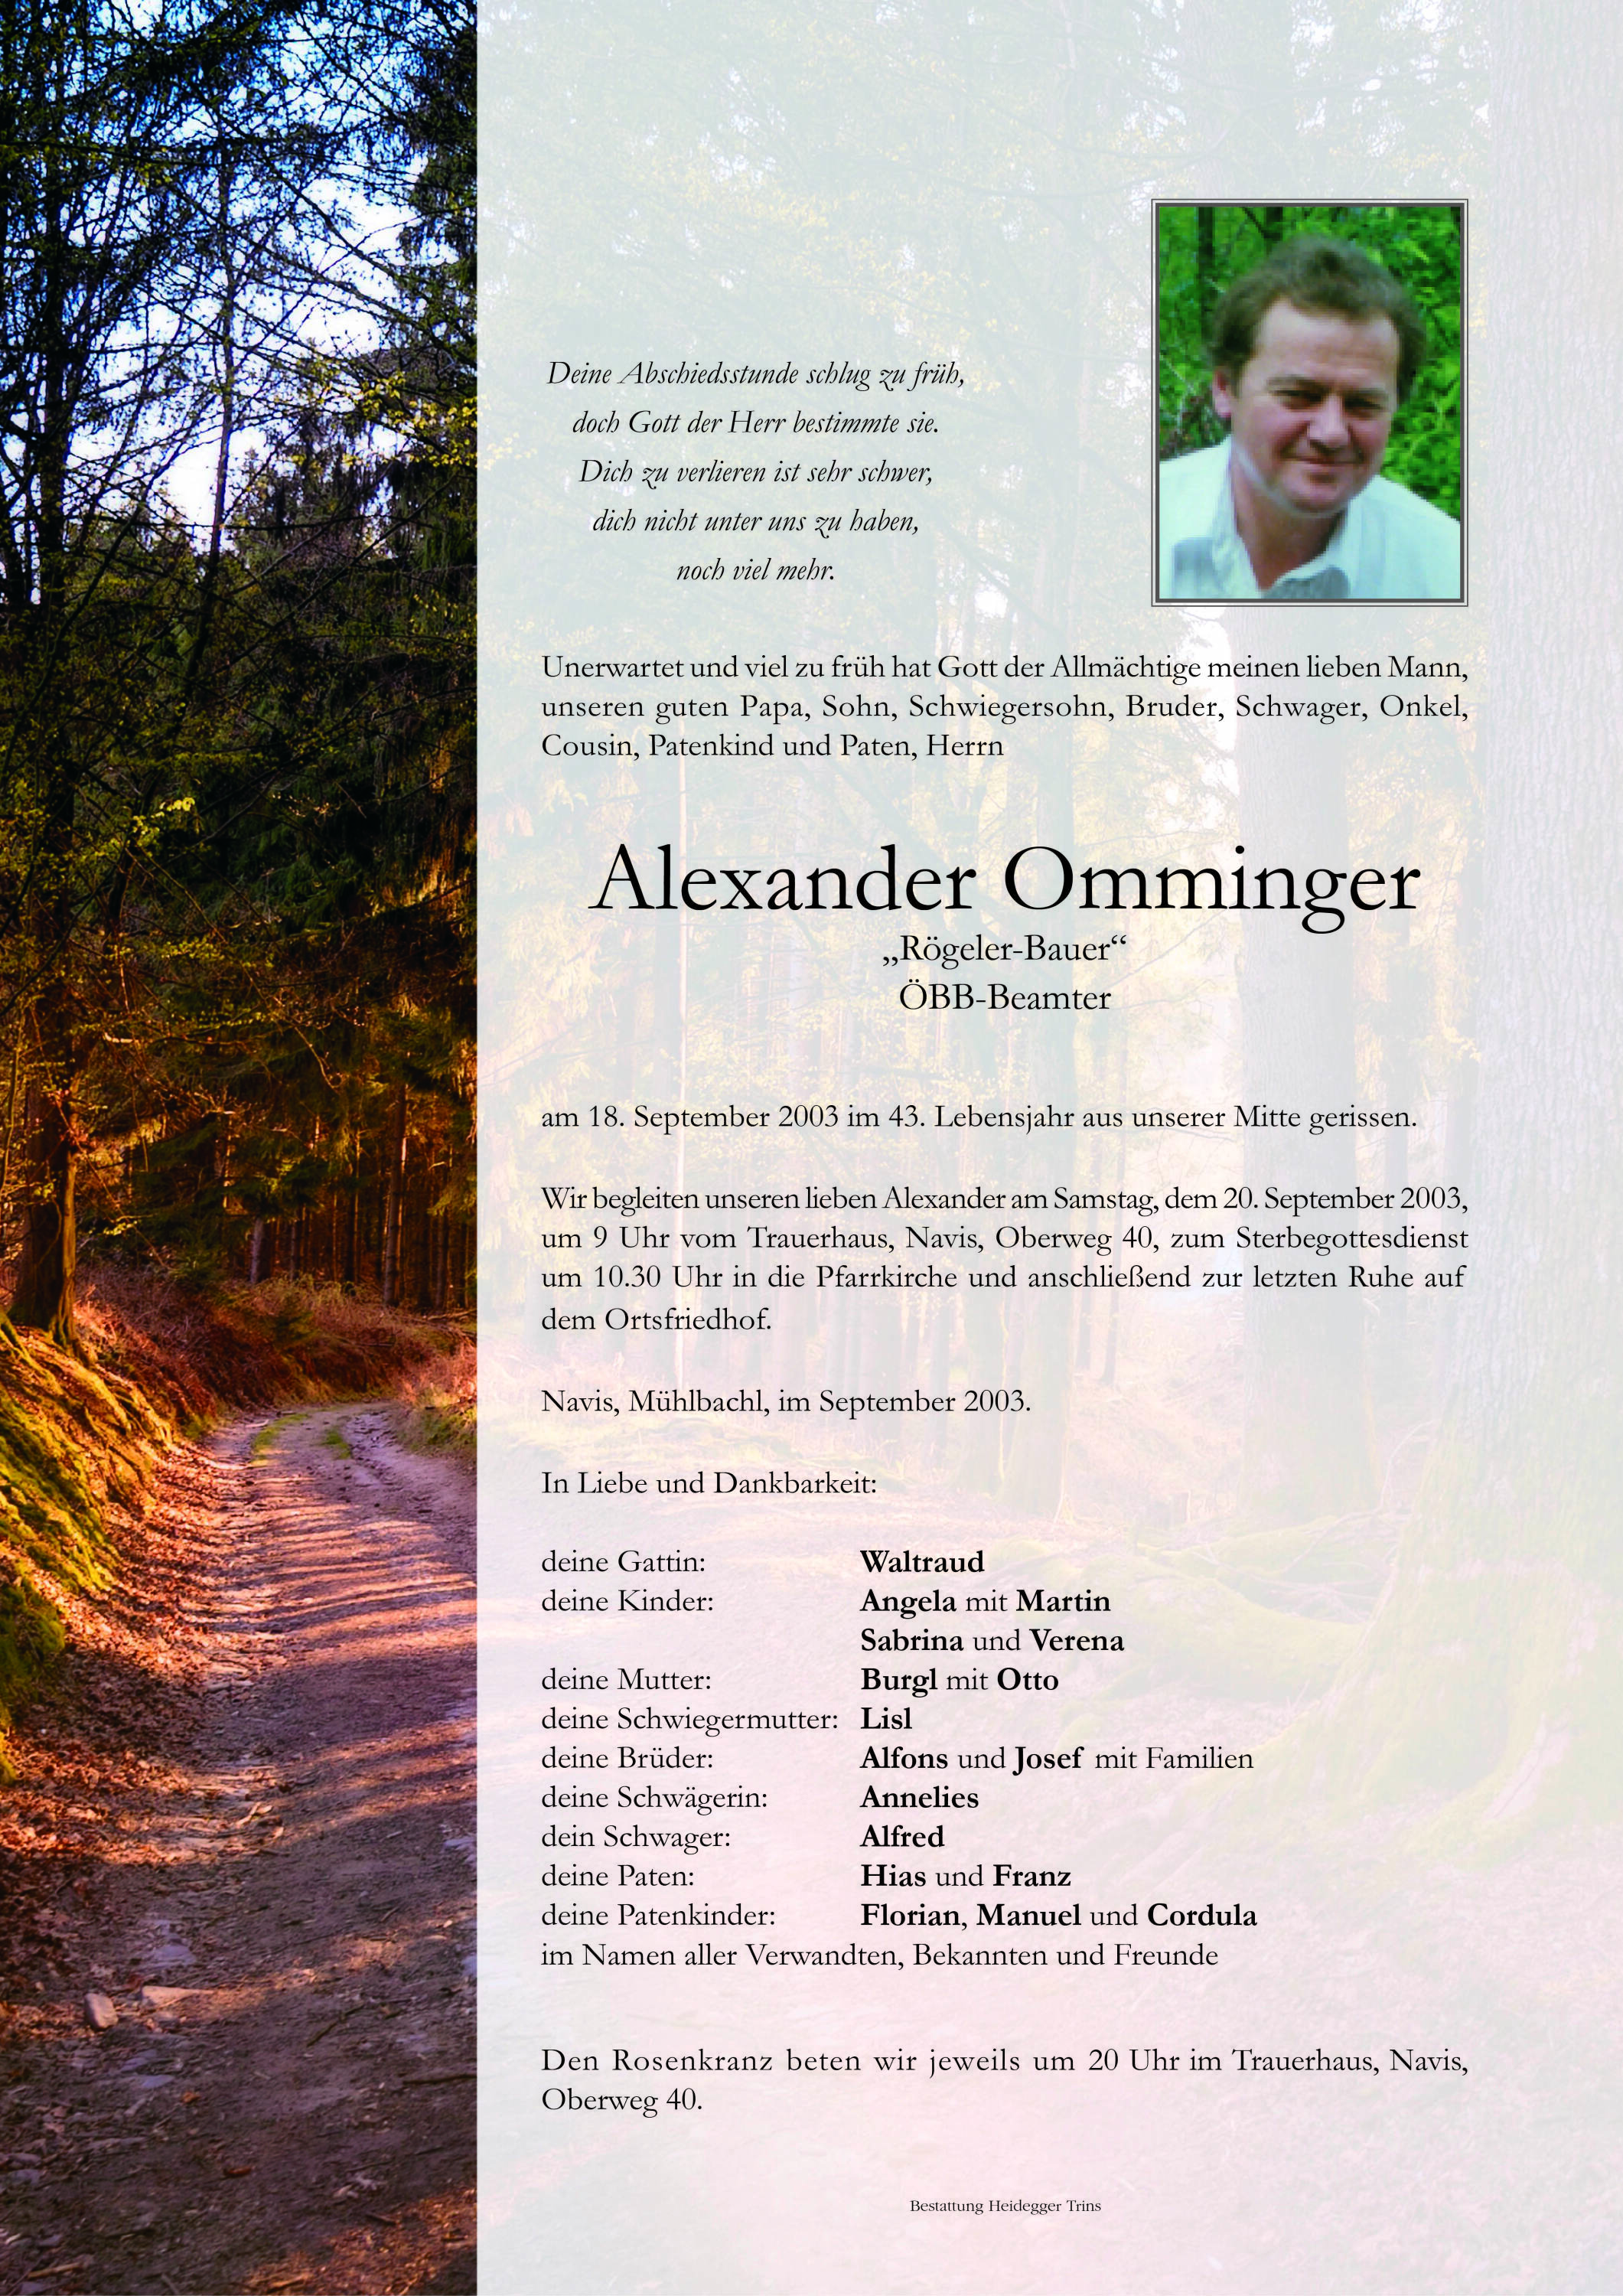 Alexander Omminger